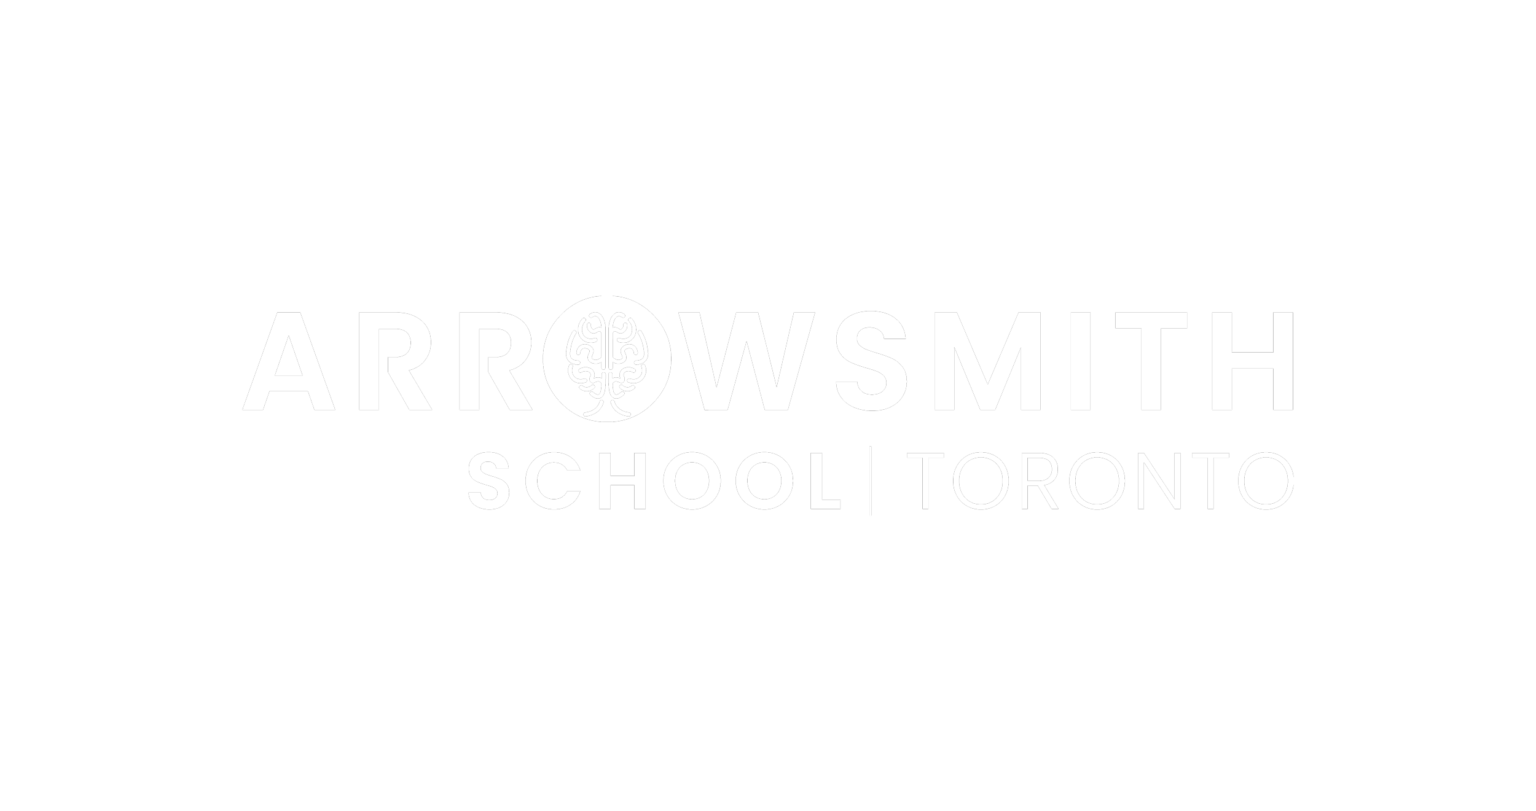 Arrowsmith-School-Toronto-White